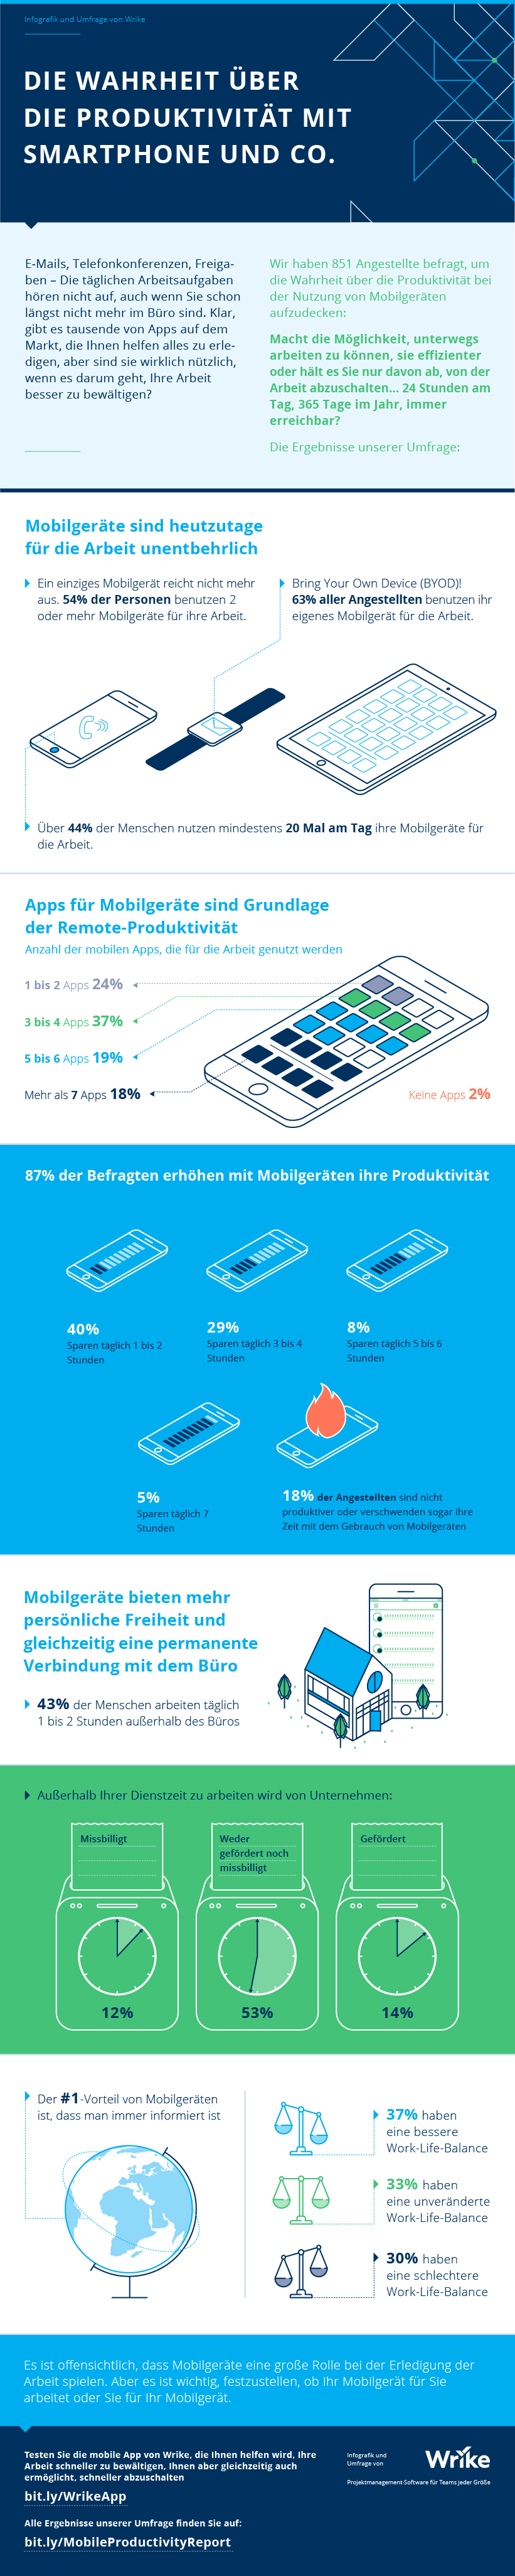 Hilft Ihr Handy Ihnen dabei, produktiver zu sein? (Infografik)